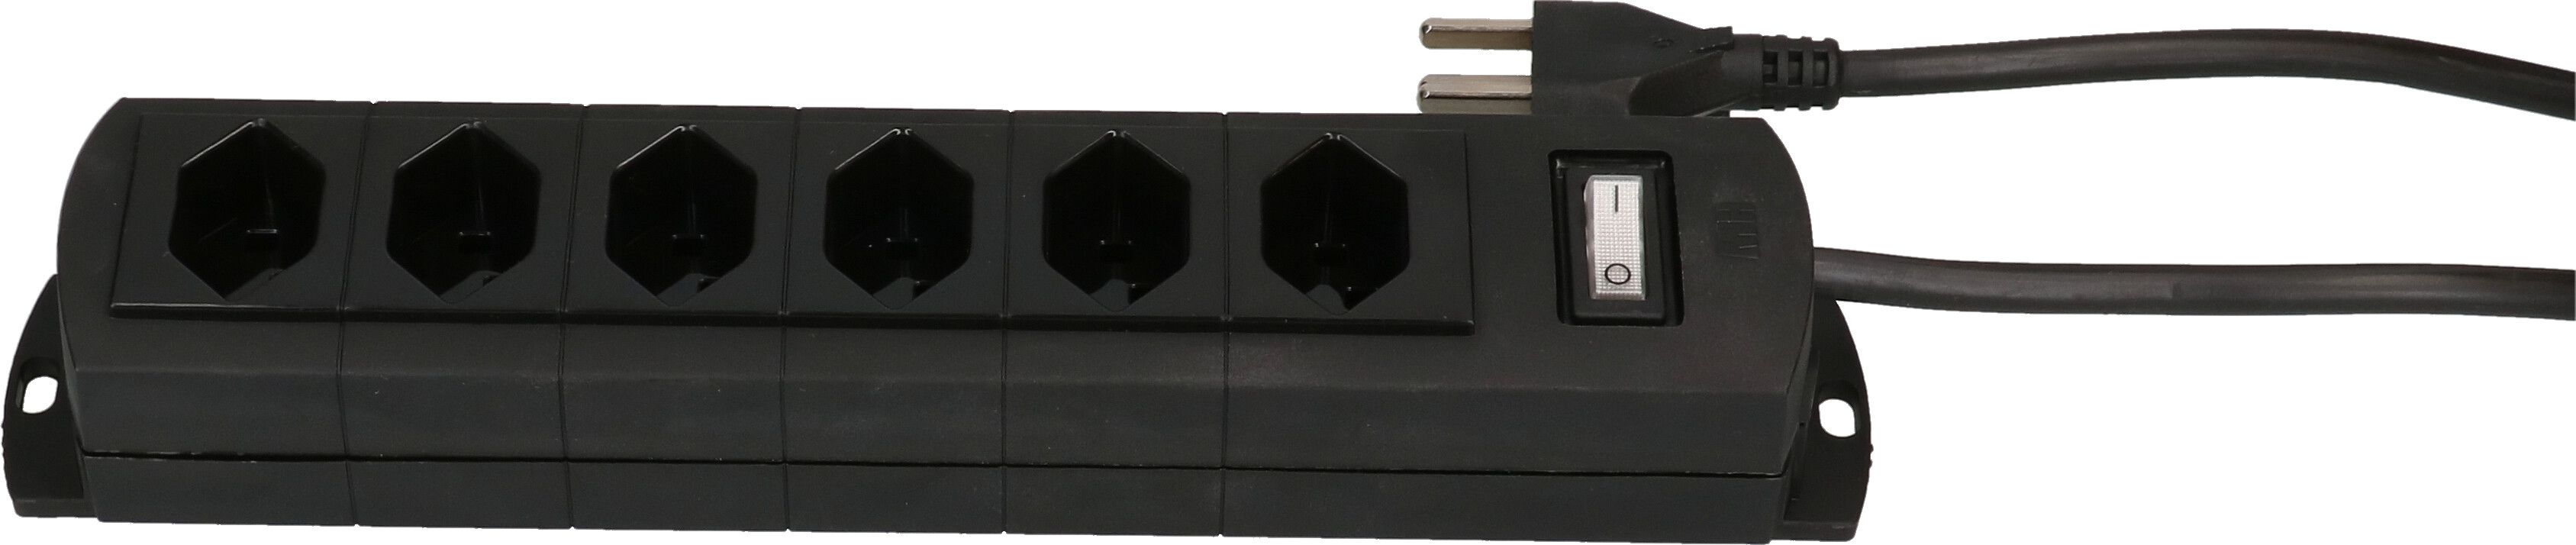 Steckdosenleiste Prime Line 6x Typ 23 schwarz Schalter 3m